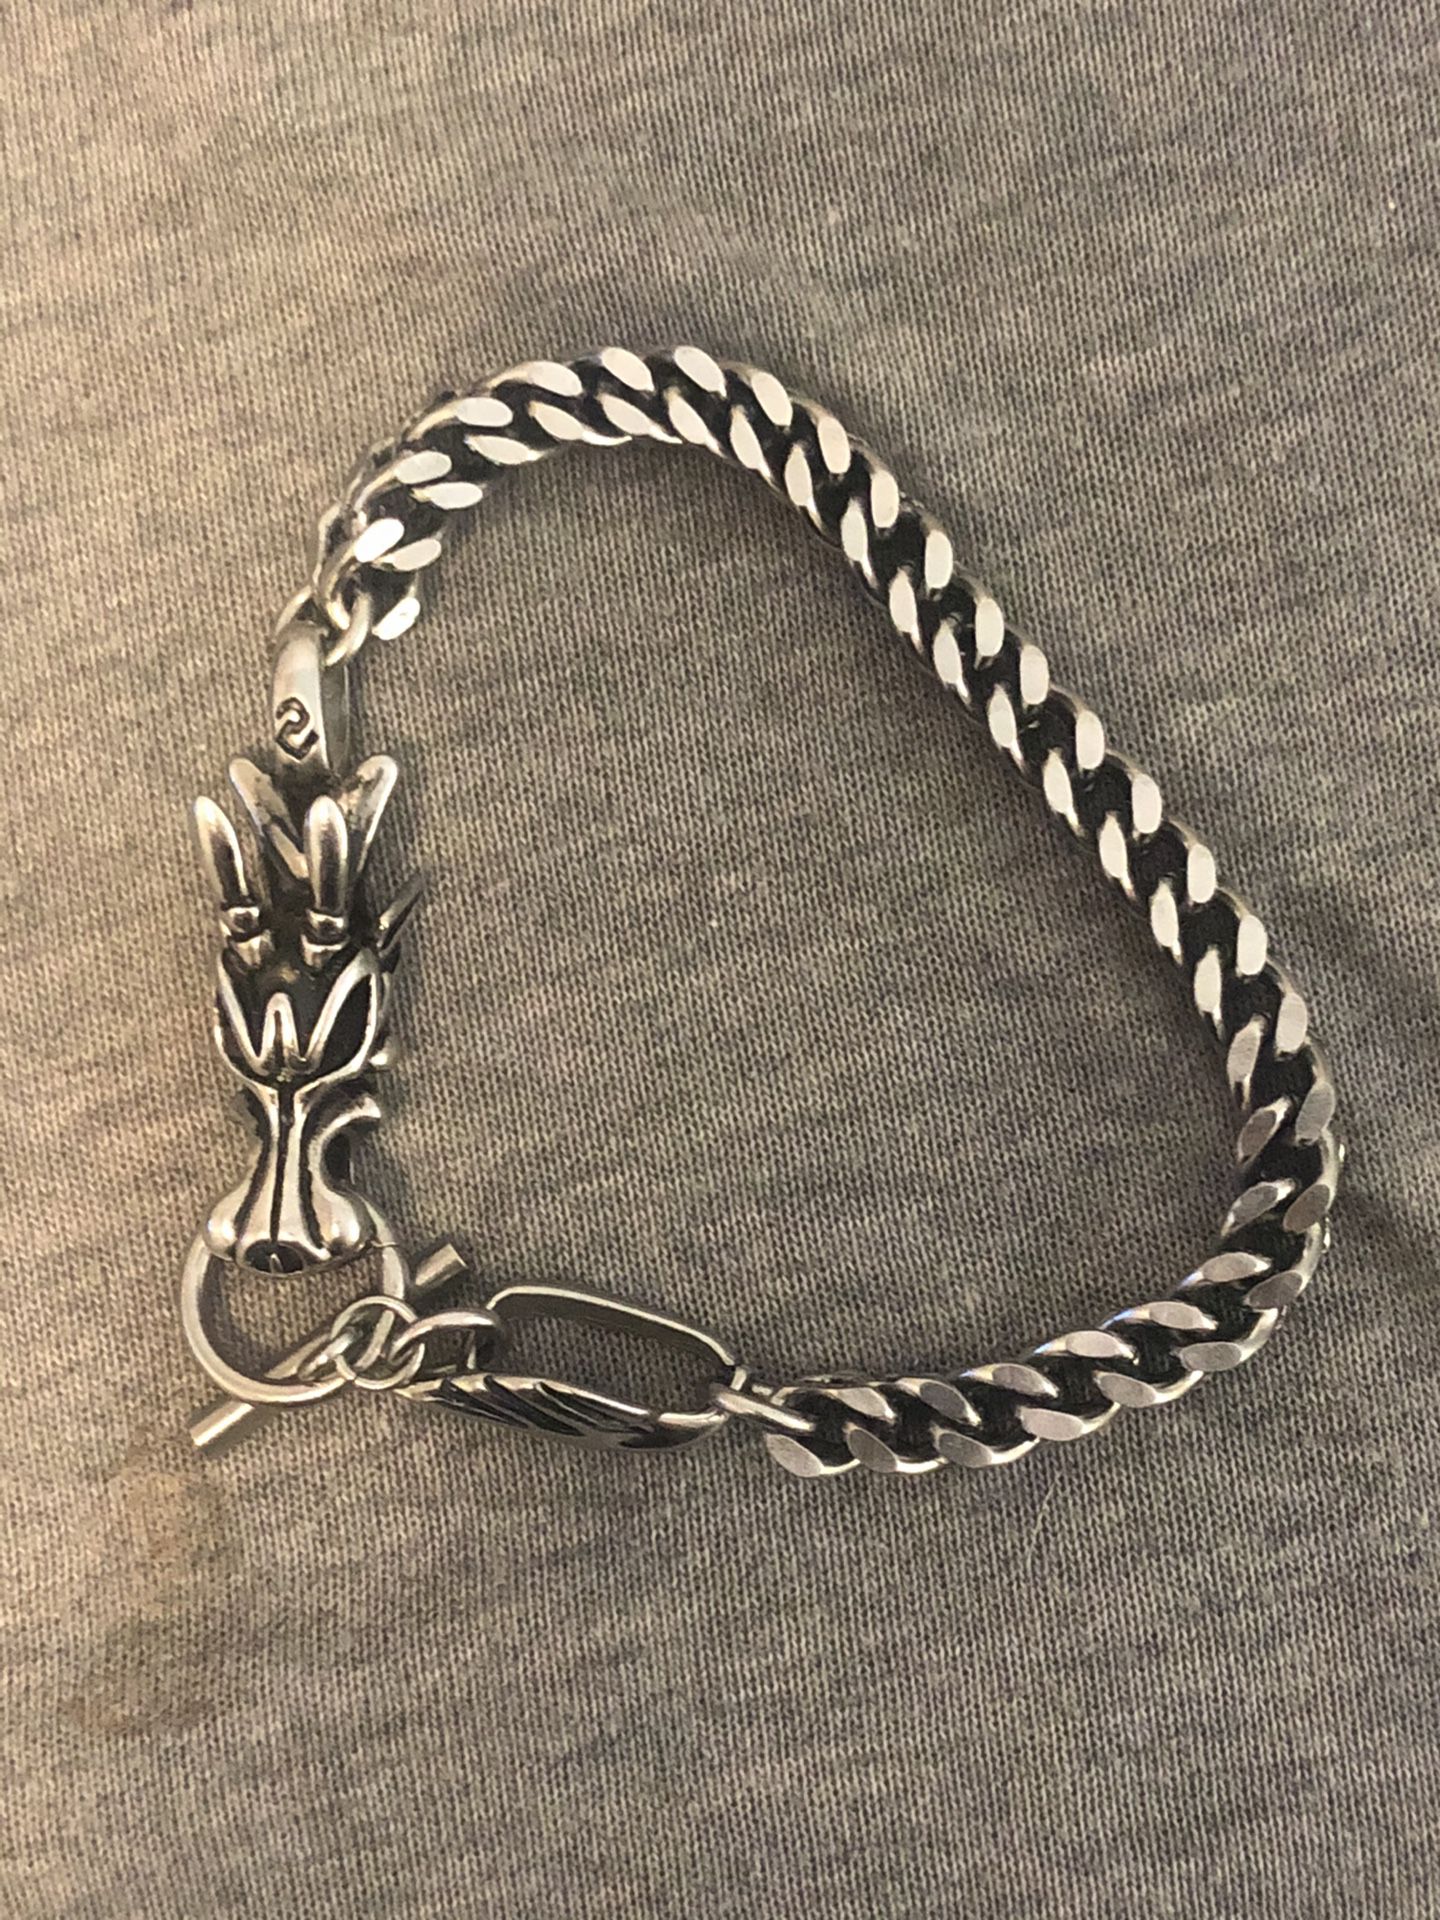 dragon bracelet mens stainless steel charm bracelet